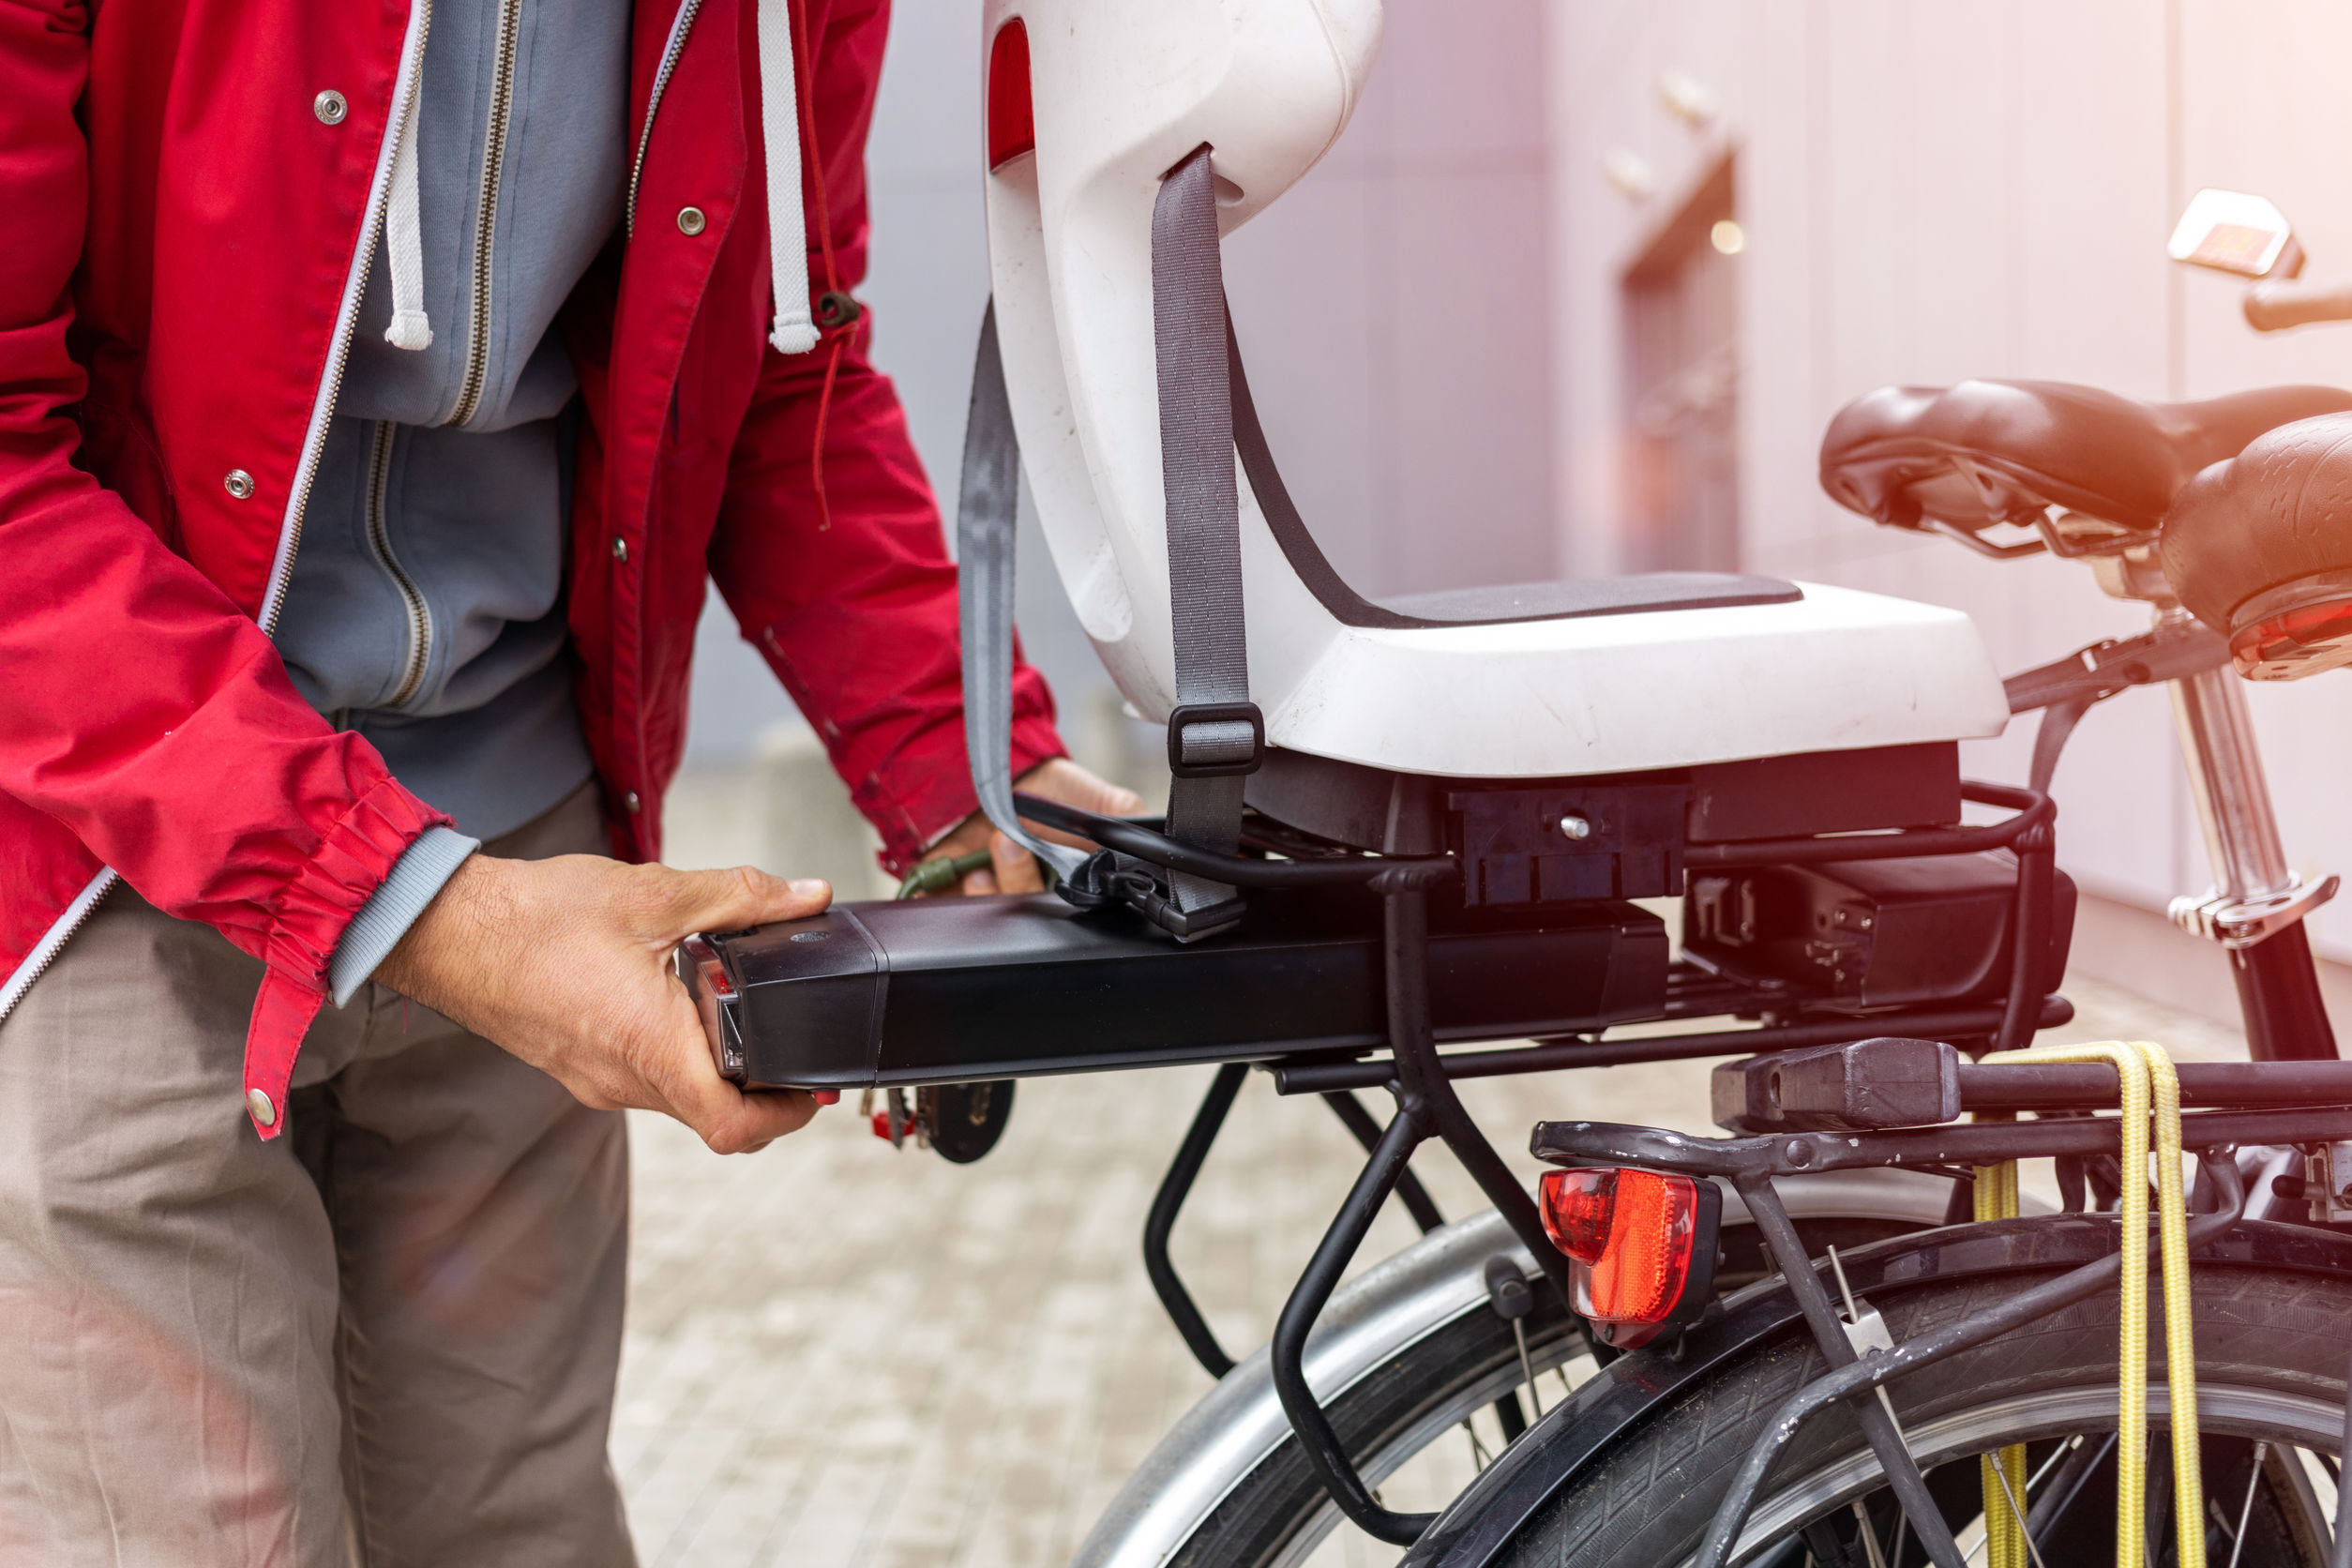 Laden je werknemers hun fietsbatterij op in hun kantoor? Aandacht voor bandpreventie is nodig.